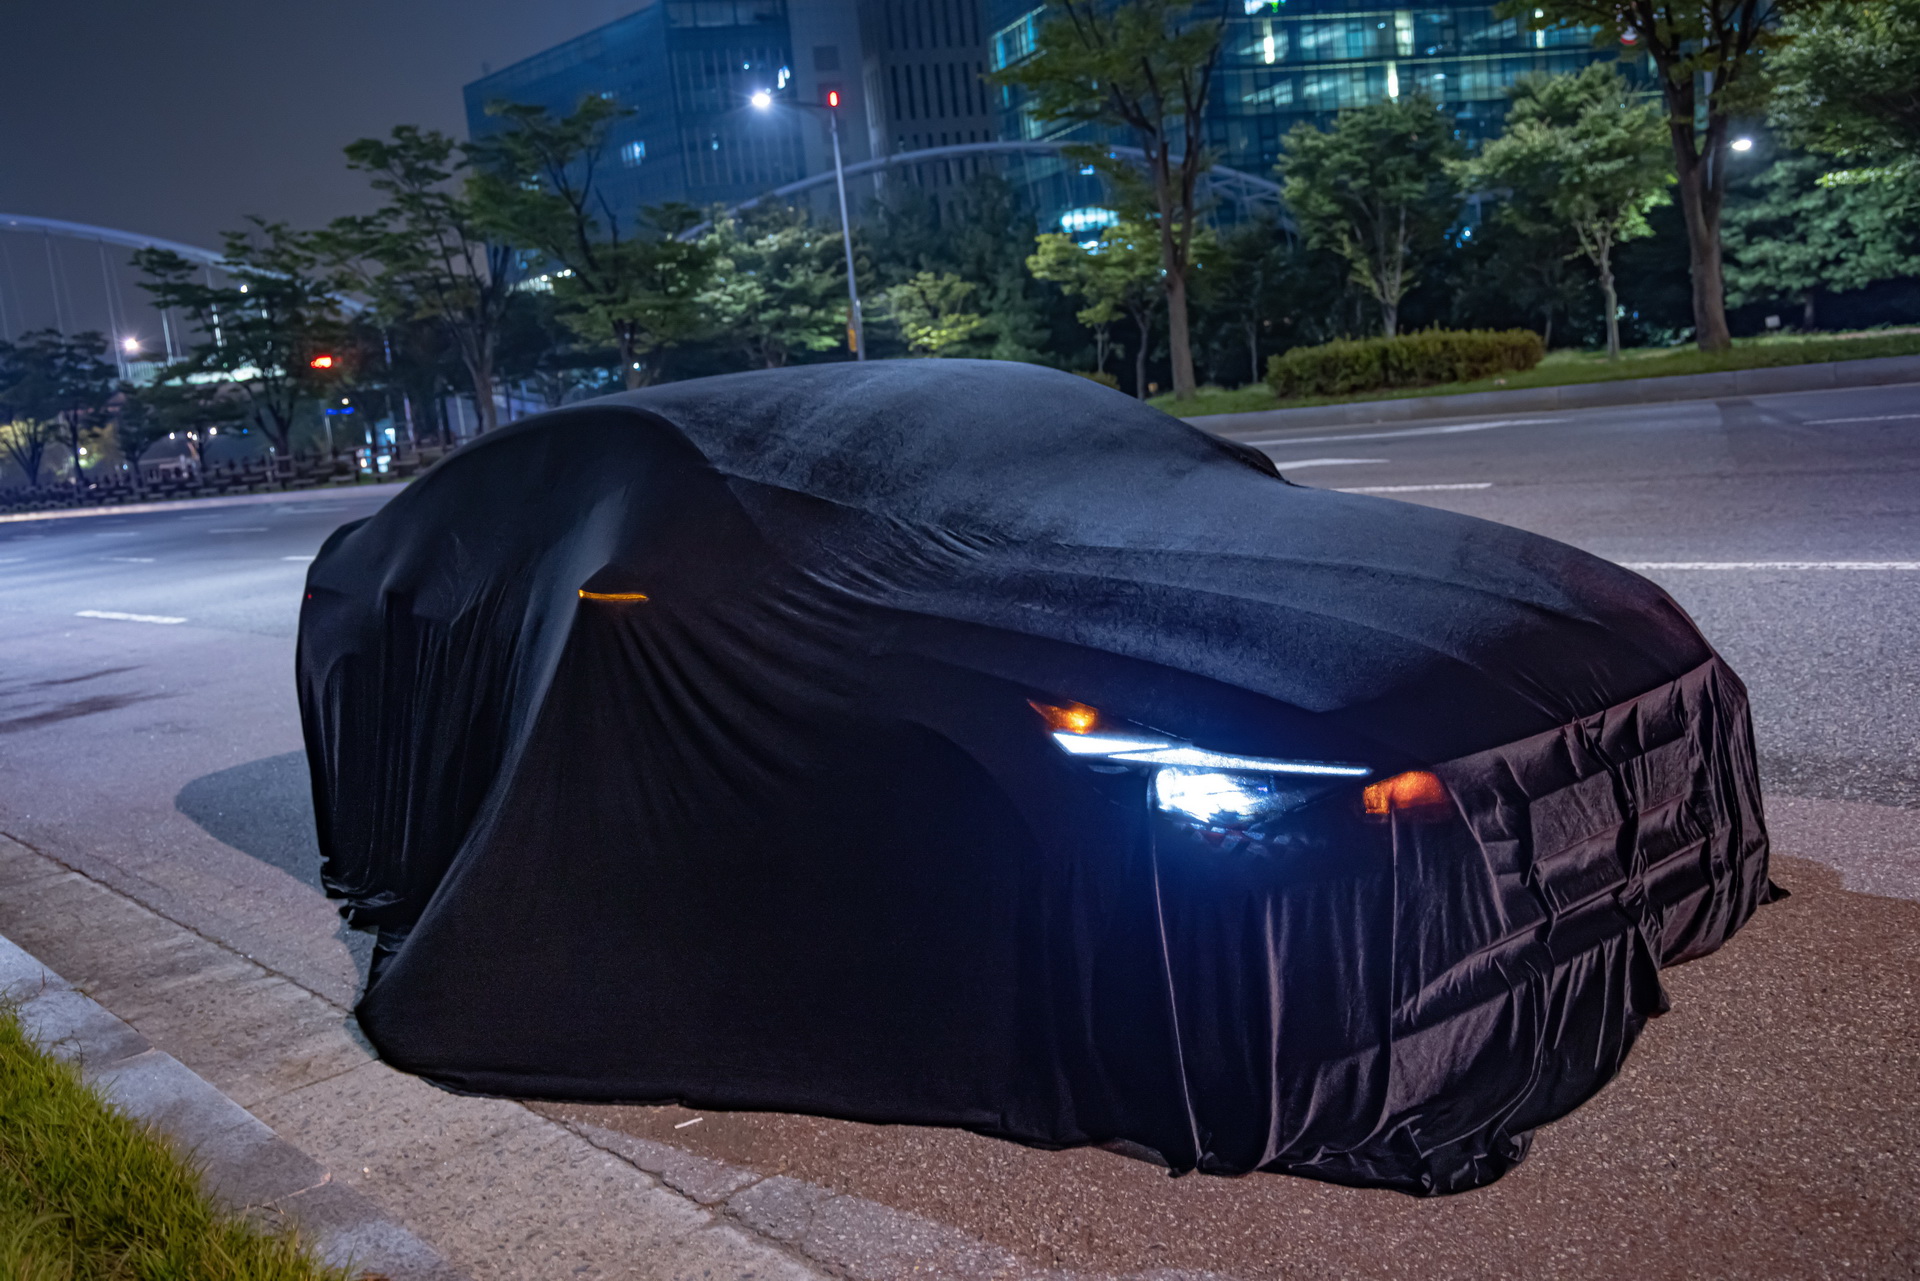 2022 Hyundai Elantra N resim galerisi (17.11.2020)